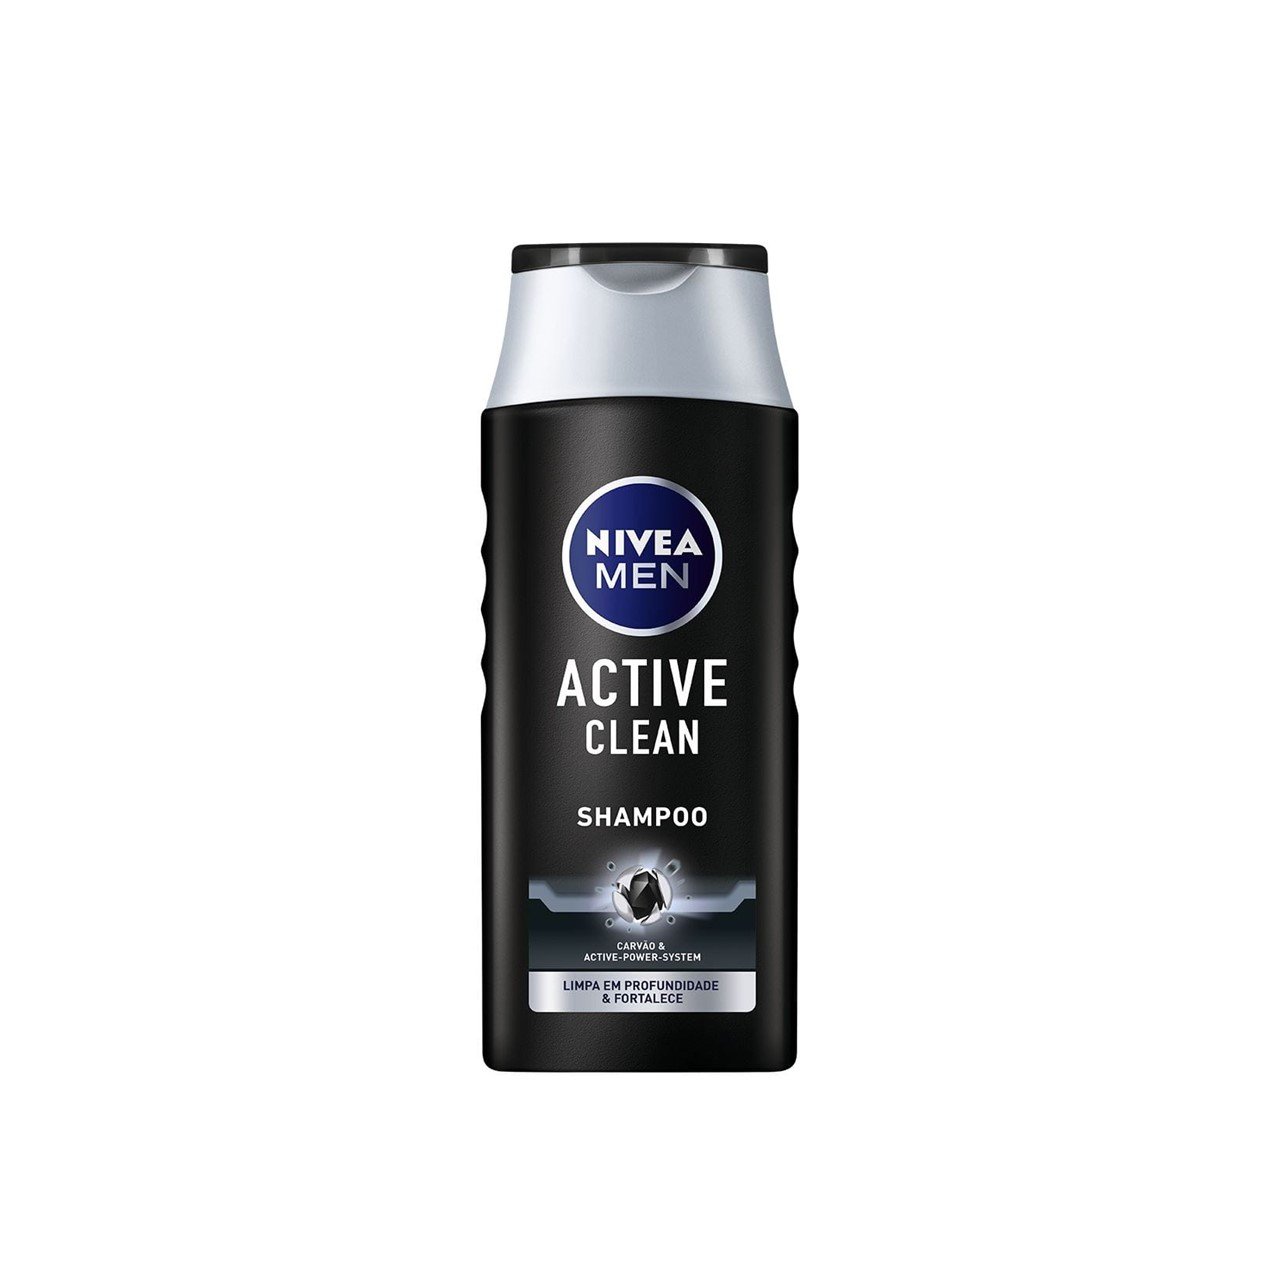 Nivea Men Active Clean Shampoo 250ml (8.45fl oz)